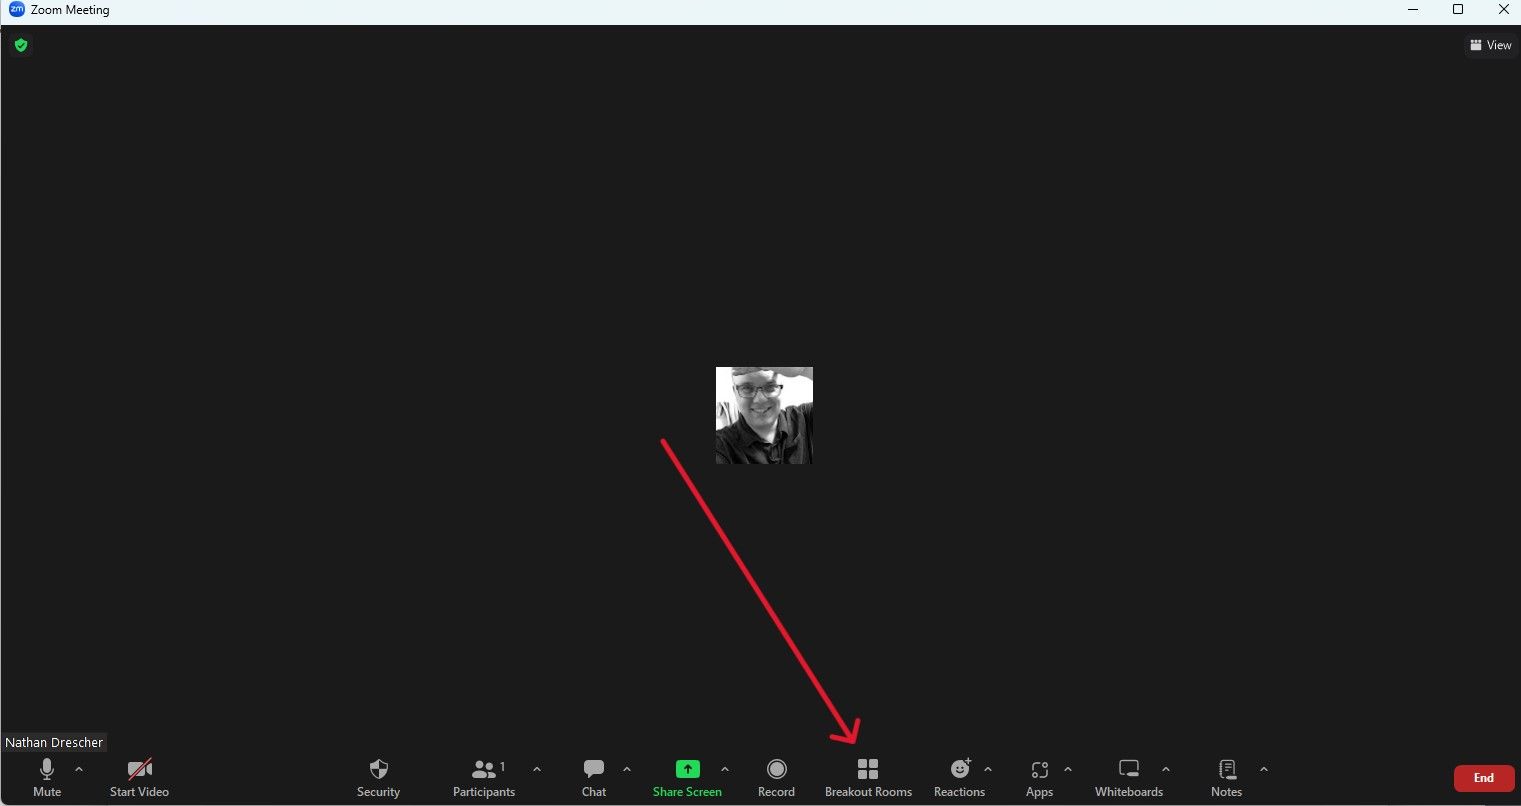 Uma reunião Zoom com uma seta vermelha apontando para BreakoutRooms na parte inferior da tela.